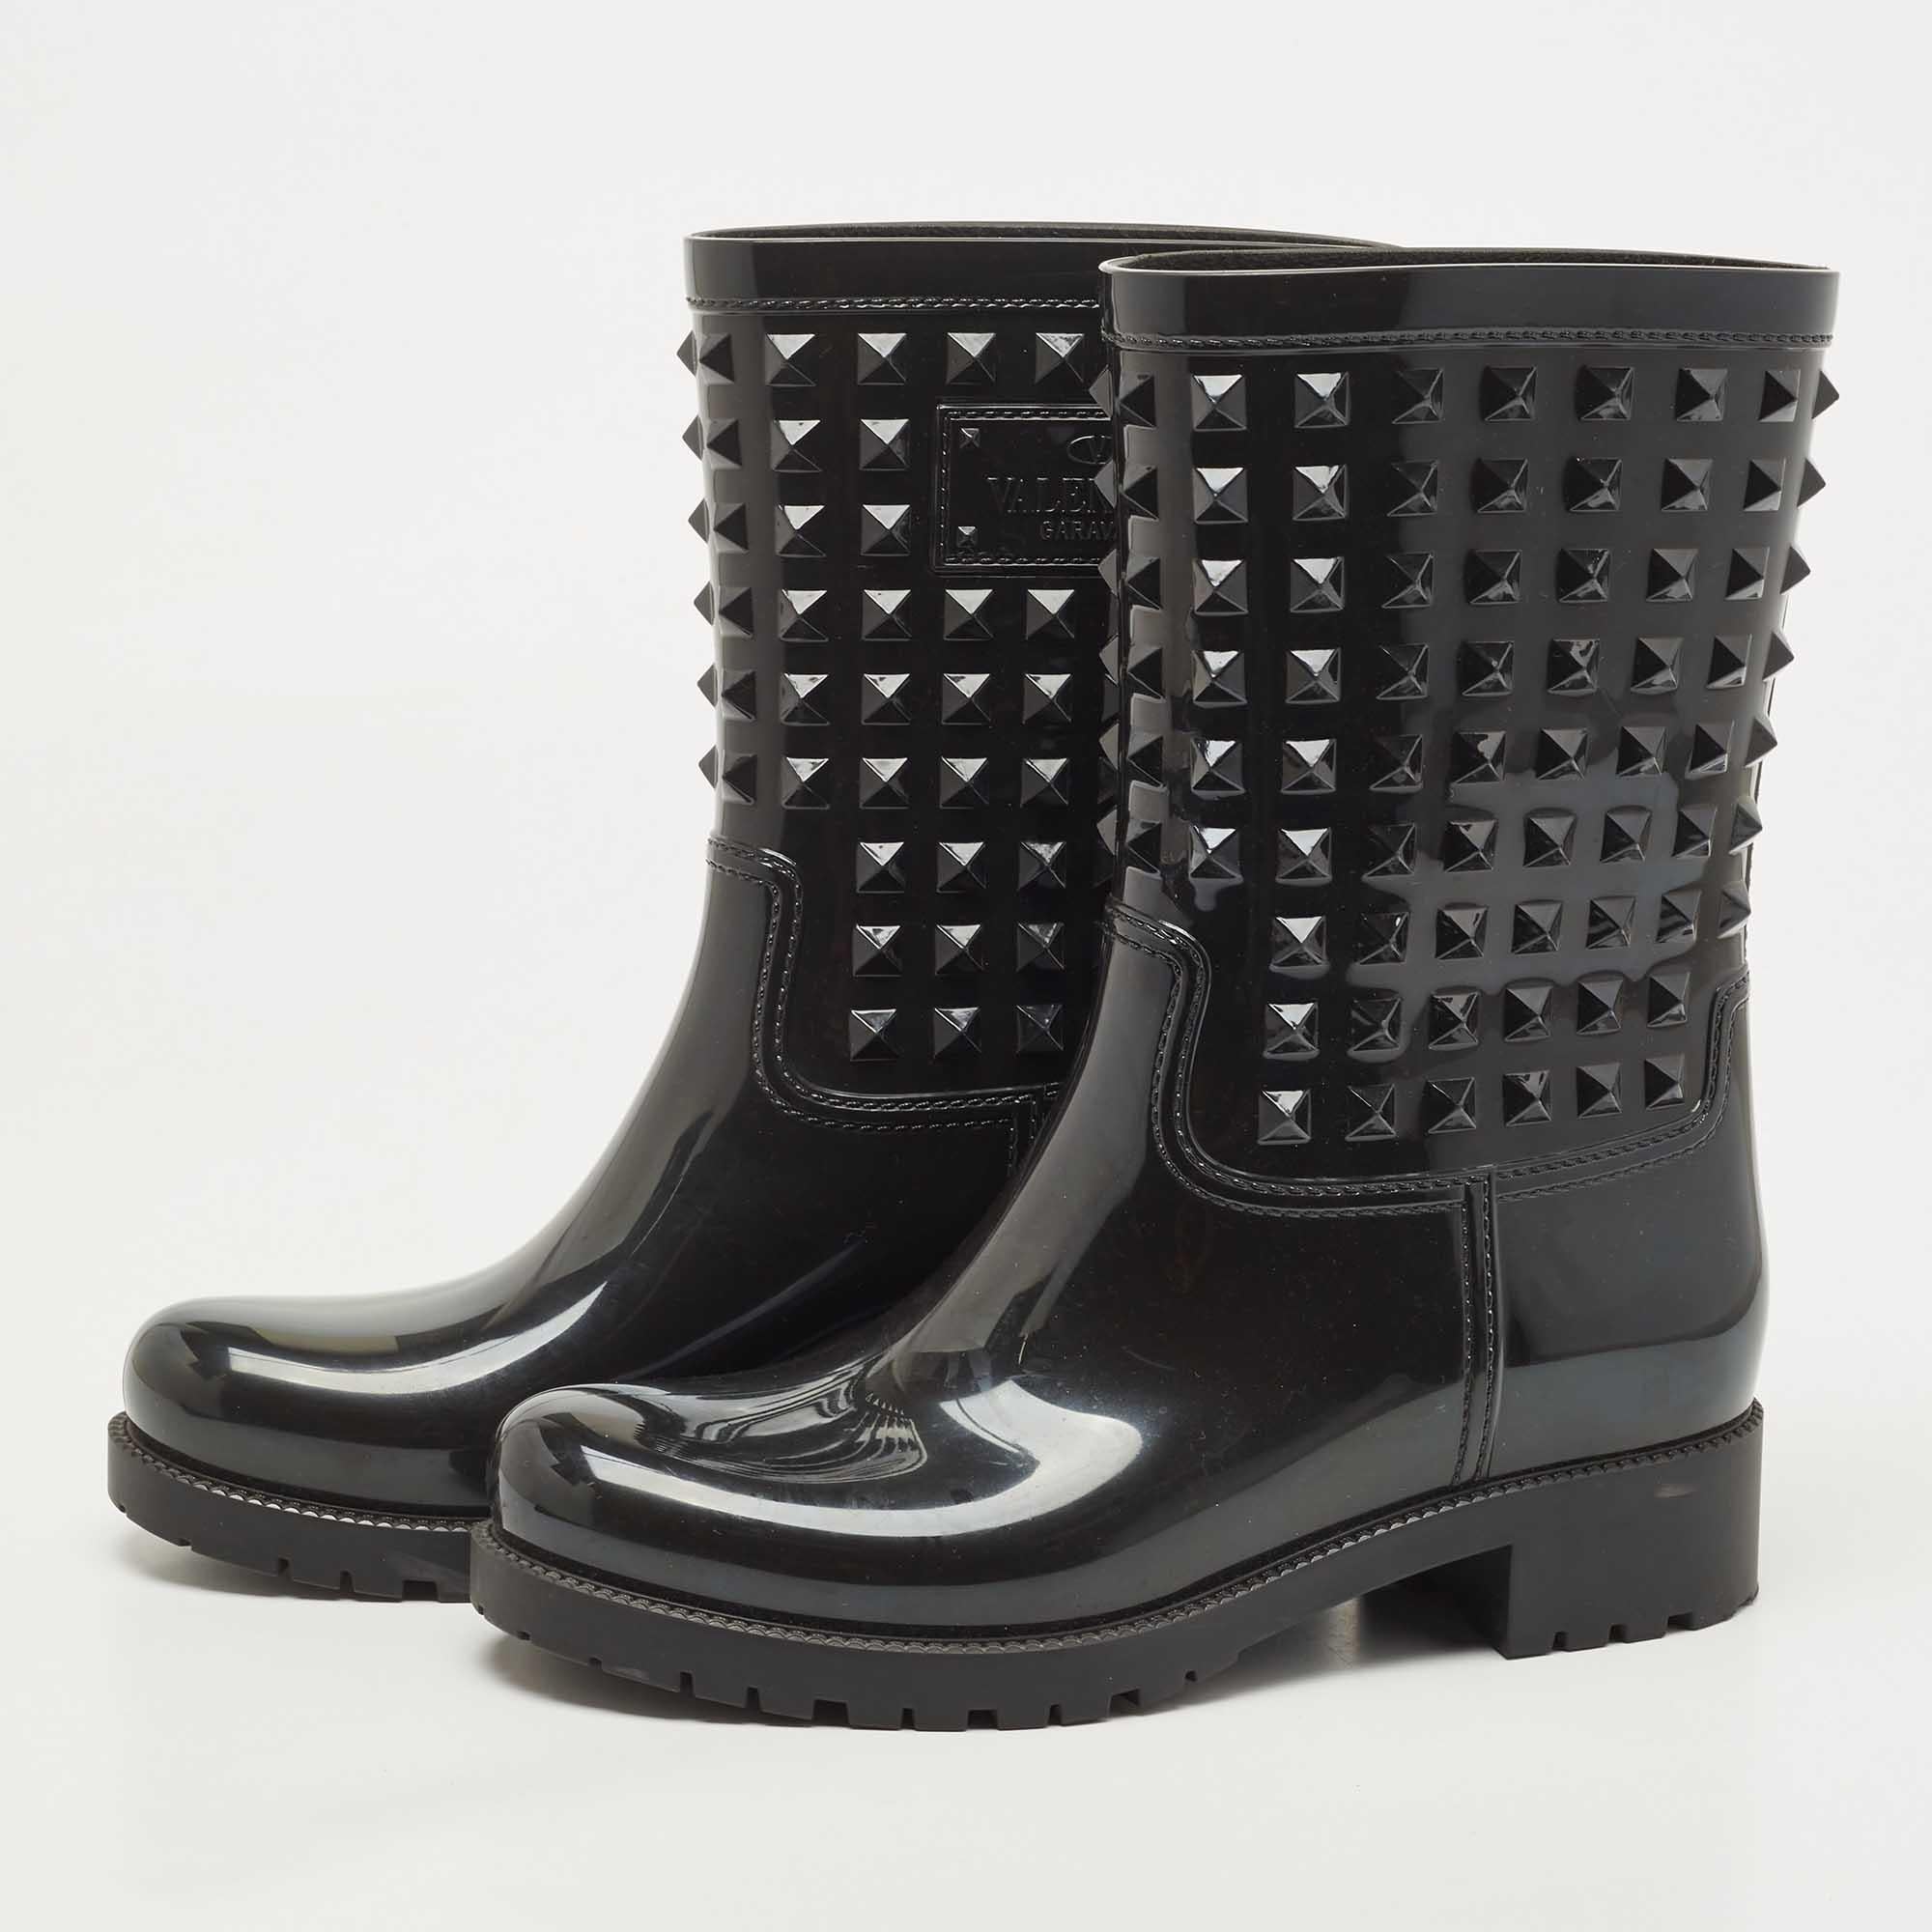 Women's Louis Vuitton Black Rubber Studded Rain Boots Size 38